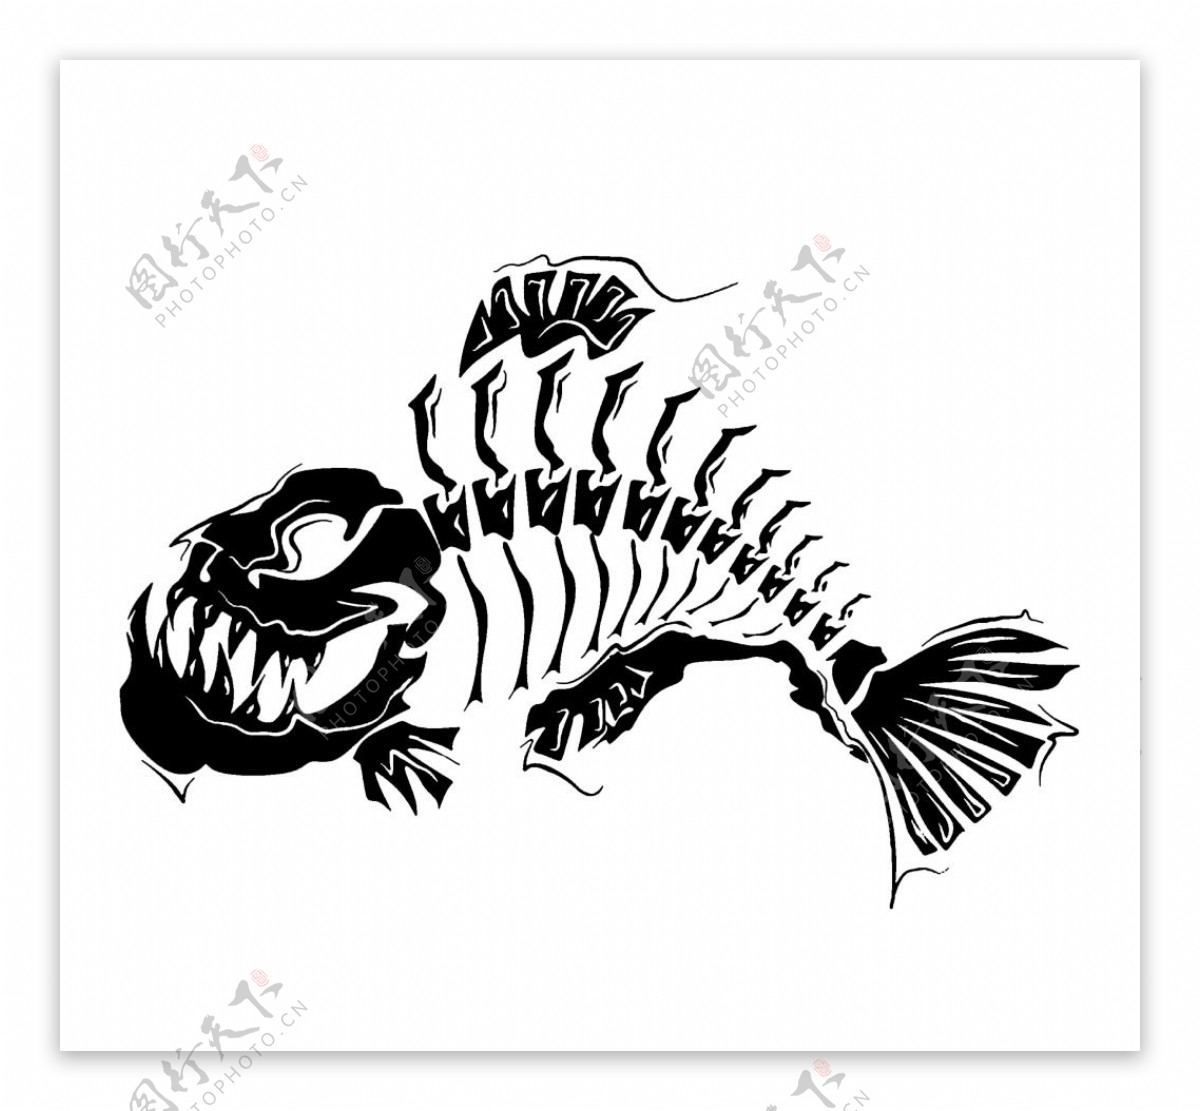 鱼骨纹身花刺 向量例证. 插画 包括有 比拉鱼, 敌意, 设计, 捕鱼, 查出, 例证, 平面, 图表 - 103180713